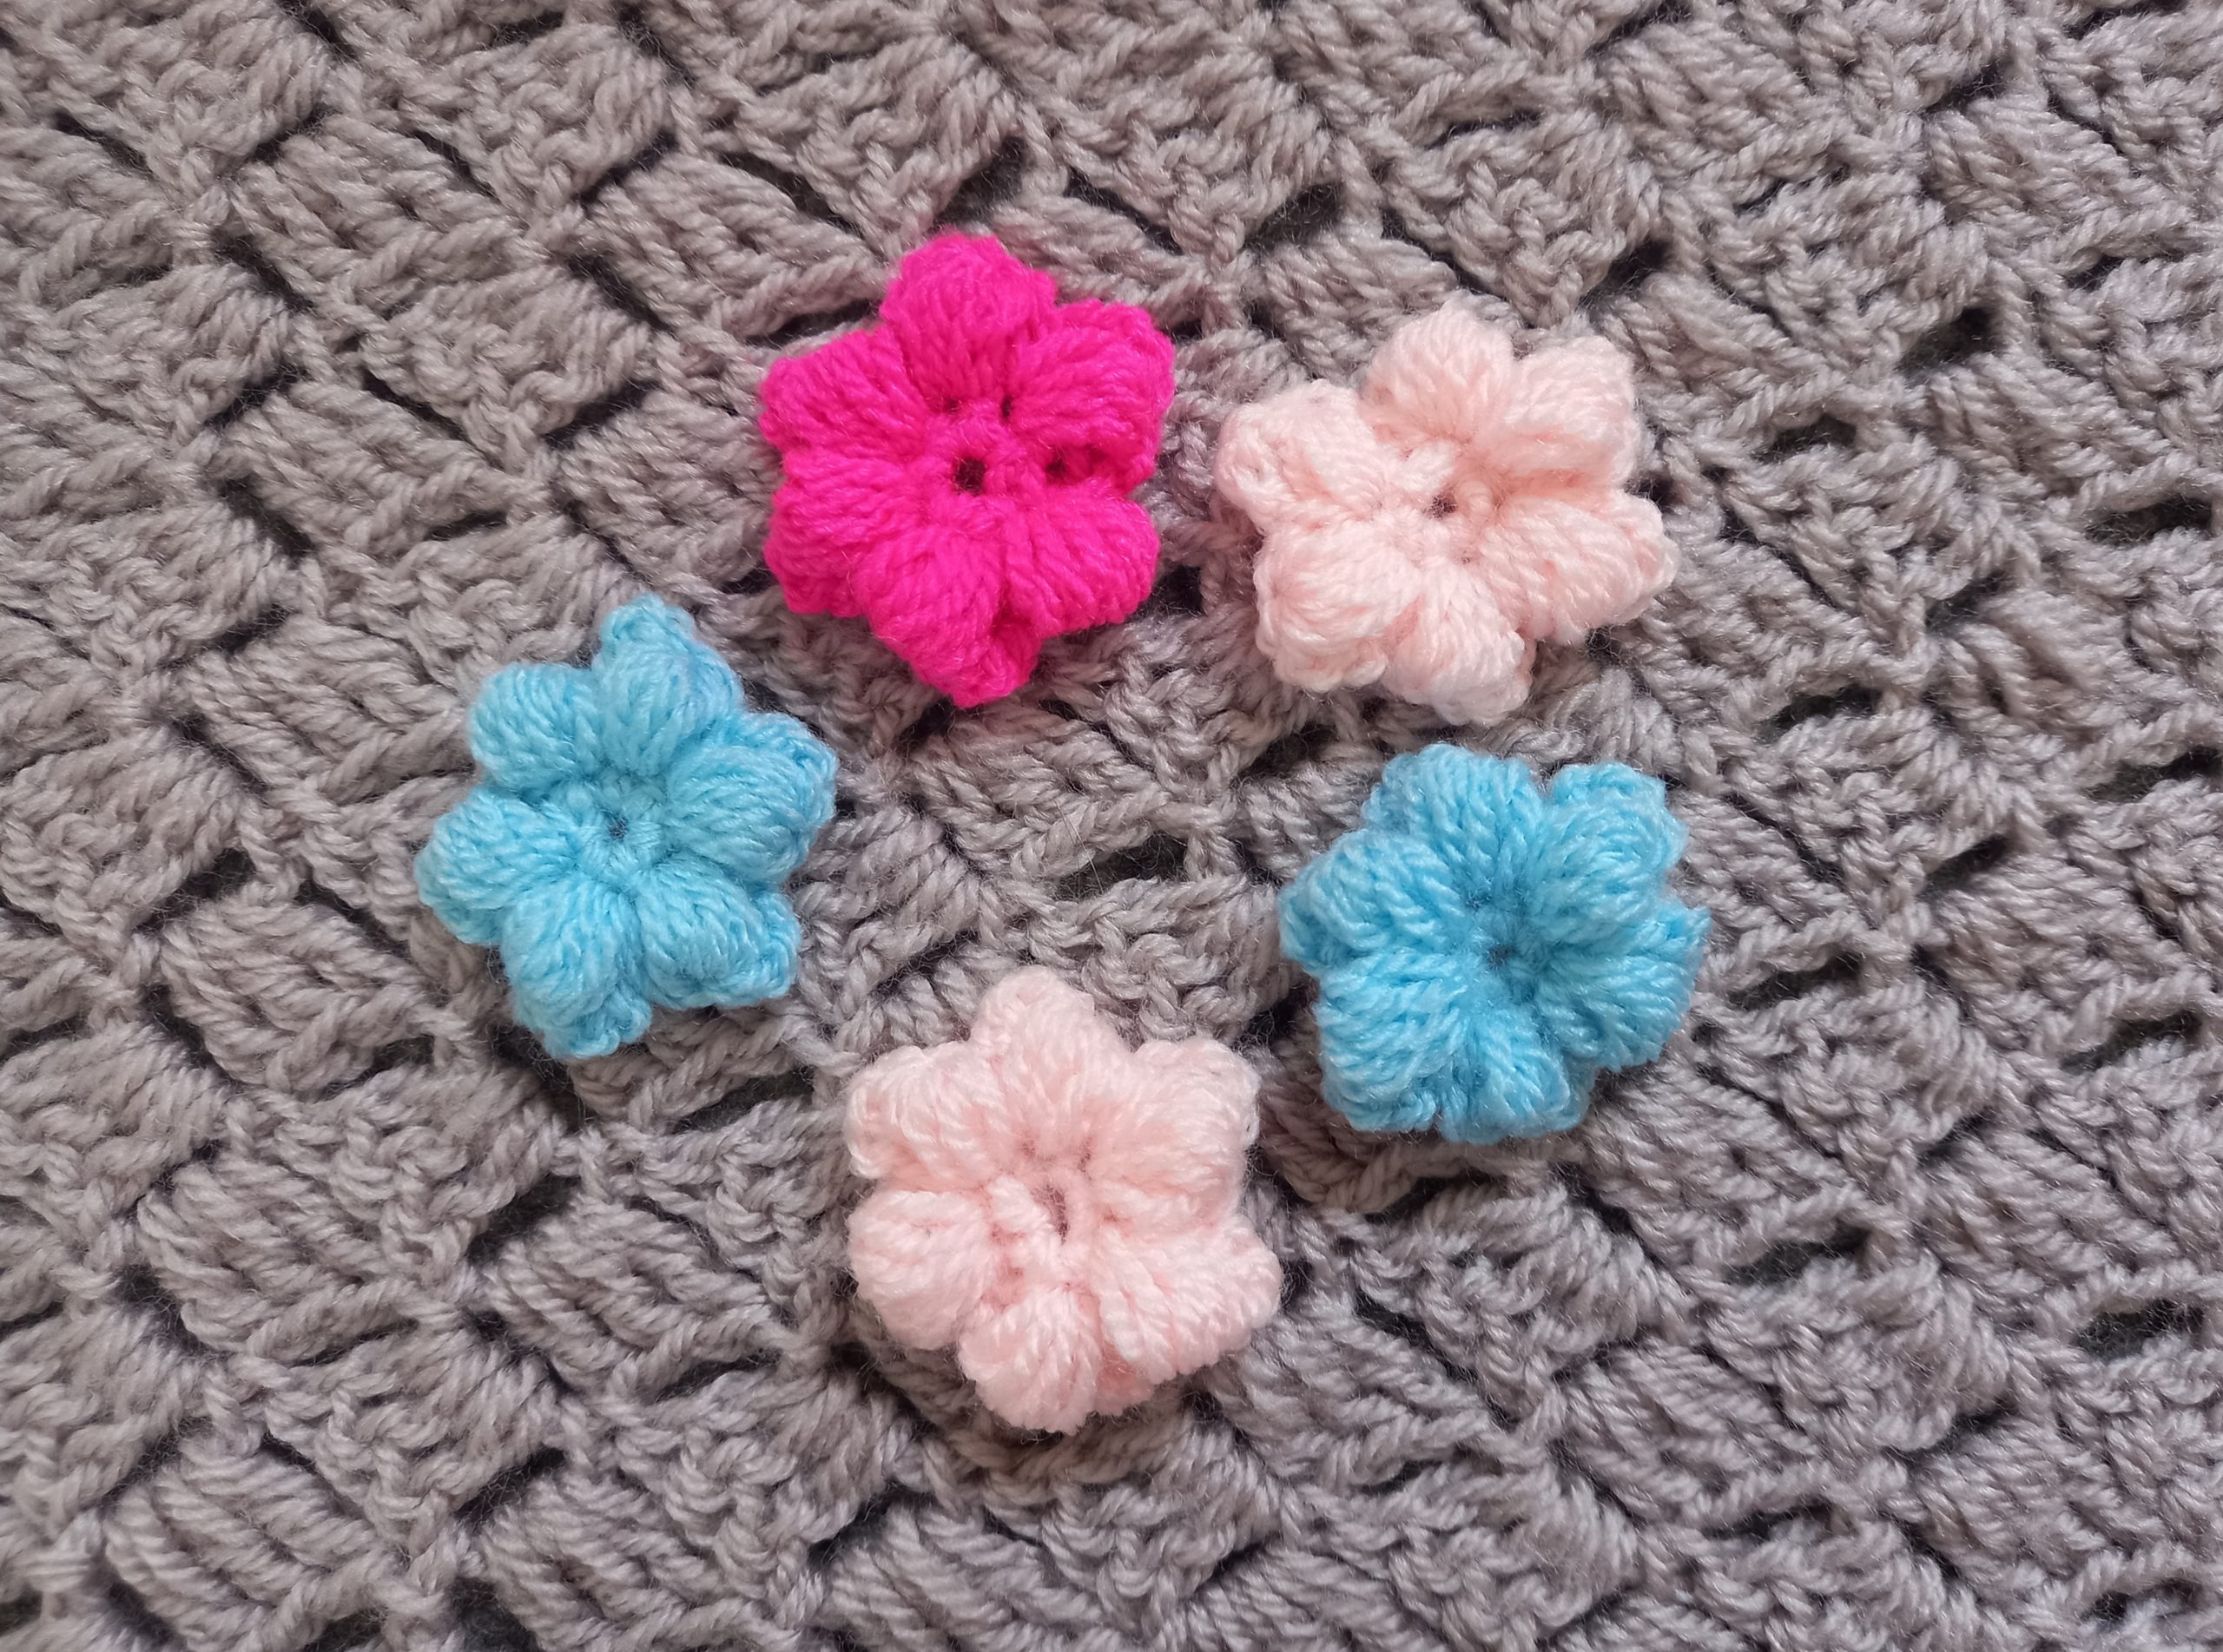 Crochet Puff Flower Beginner Tutorial